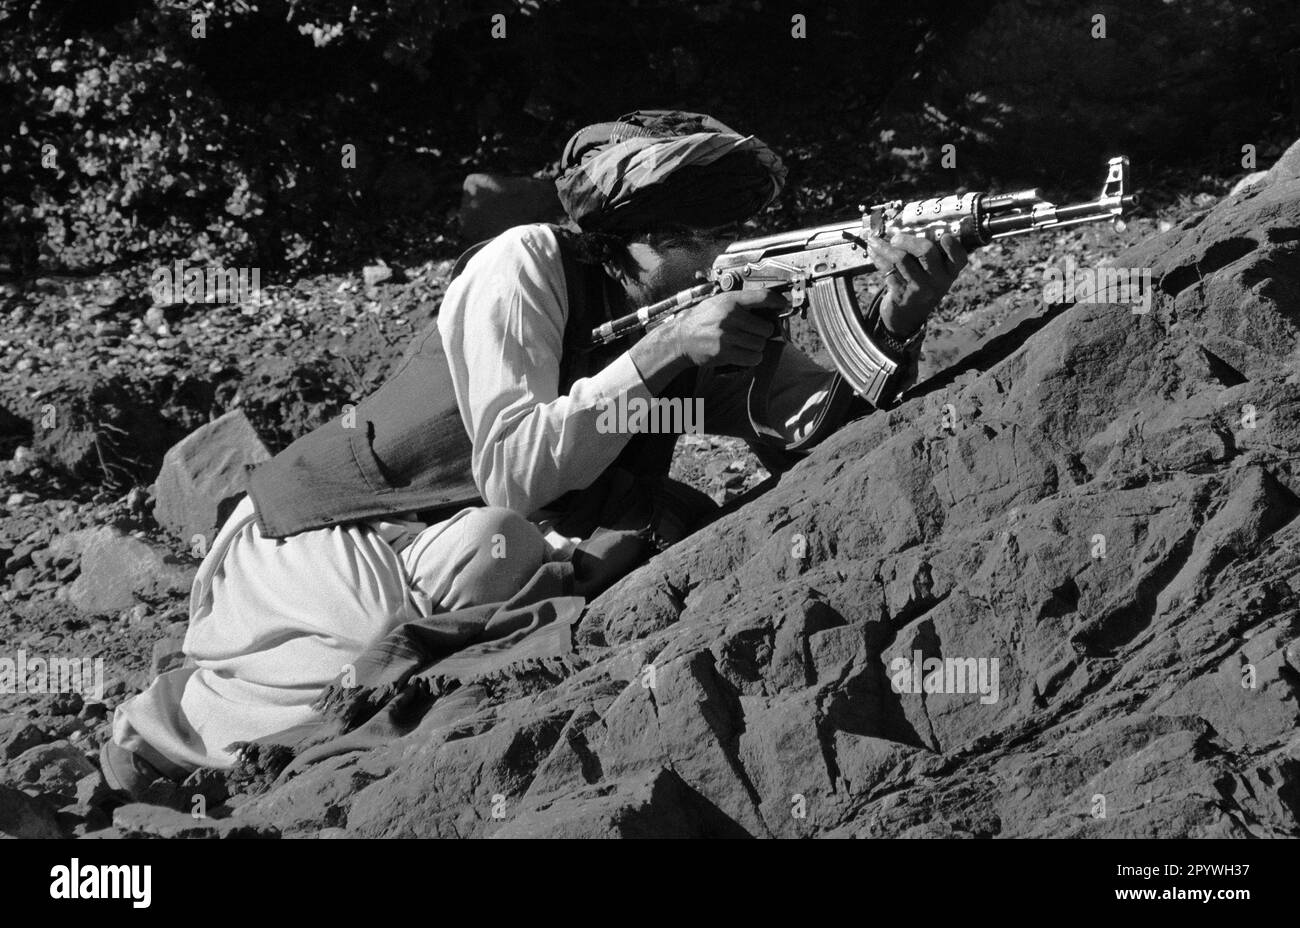 Afghanistan, Miranshah, 24.10.1990. Archiv-Nr.: 21-41-24 Foto: Ein Mudschaheddin-Kämpfer in den Bergen. [Maschinelle Übersetzung] Stockfoto